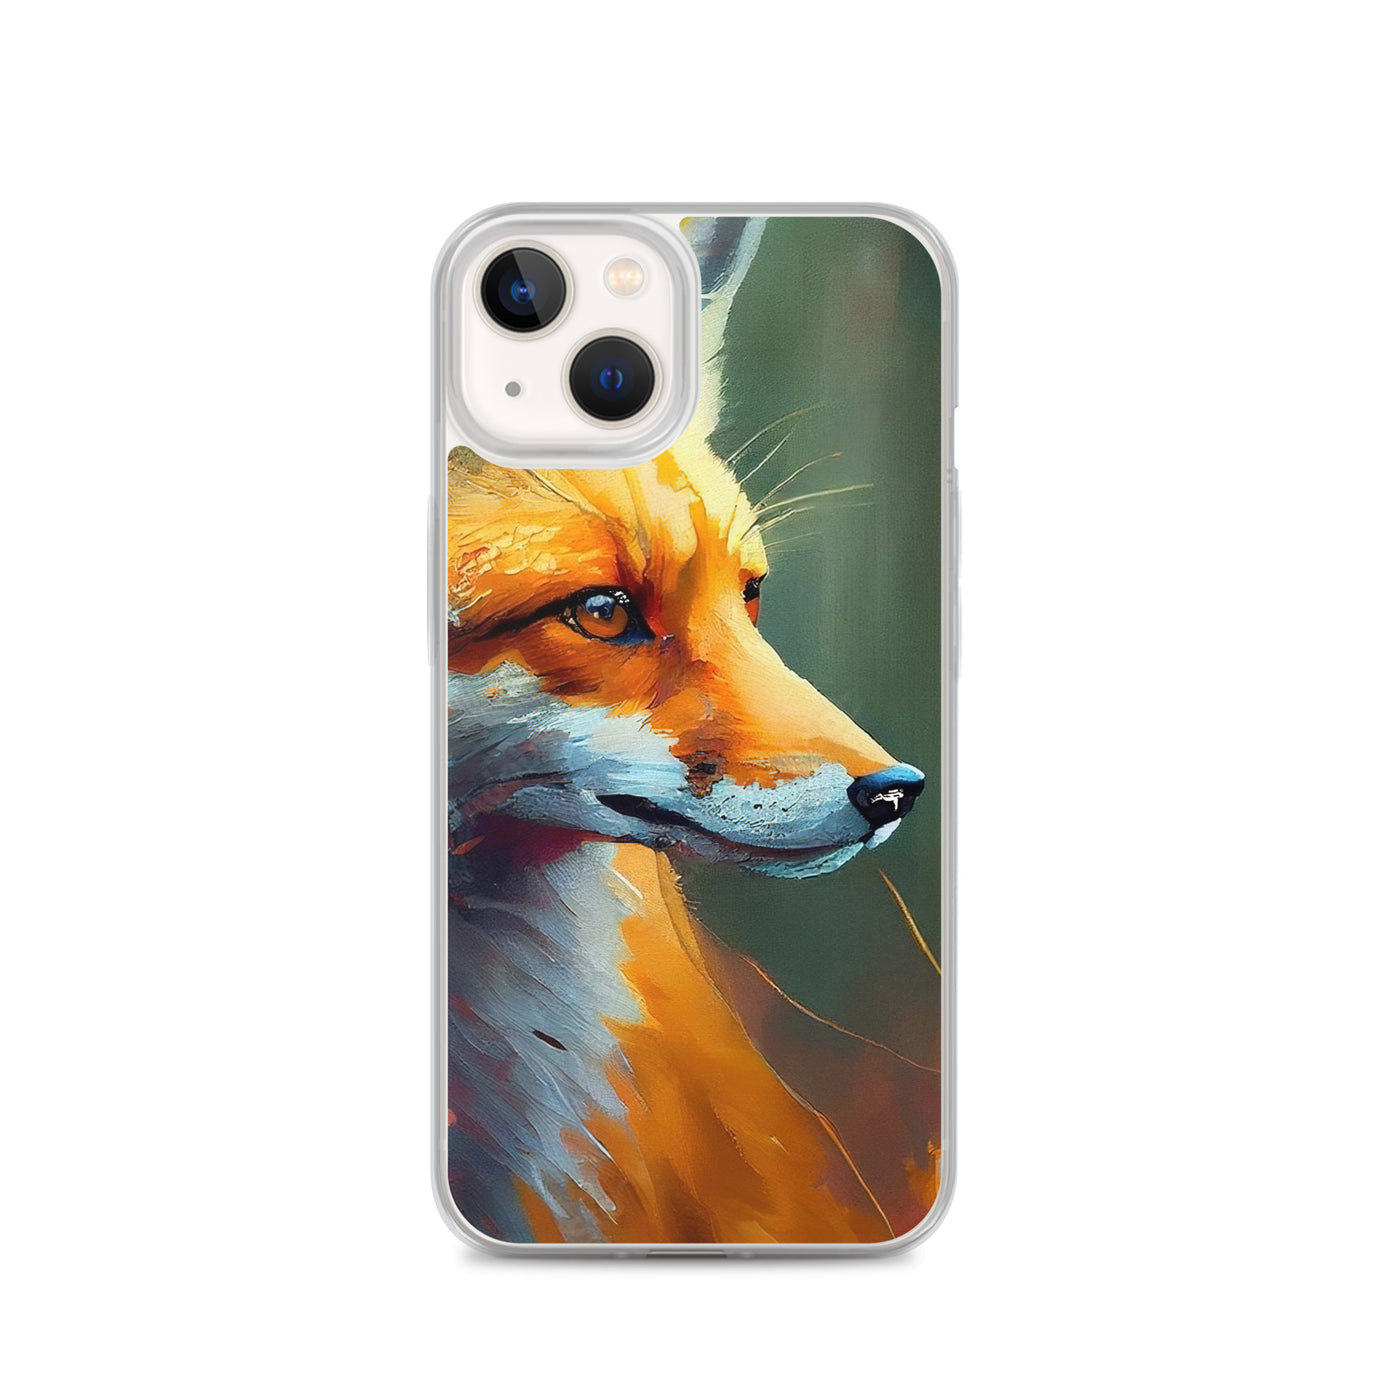 Fuchs - Ölmalerei - Schönes Kunstwerk - iPhone Schutzhülle (durchsichtig) camping xxx iPhone 13